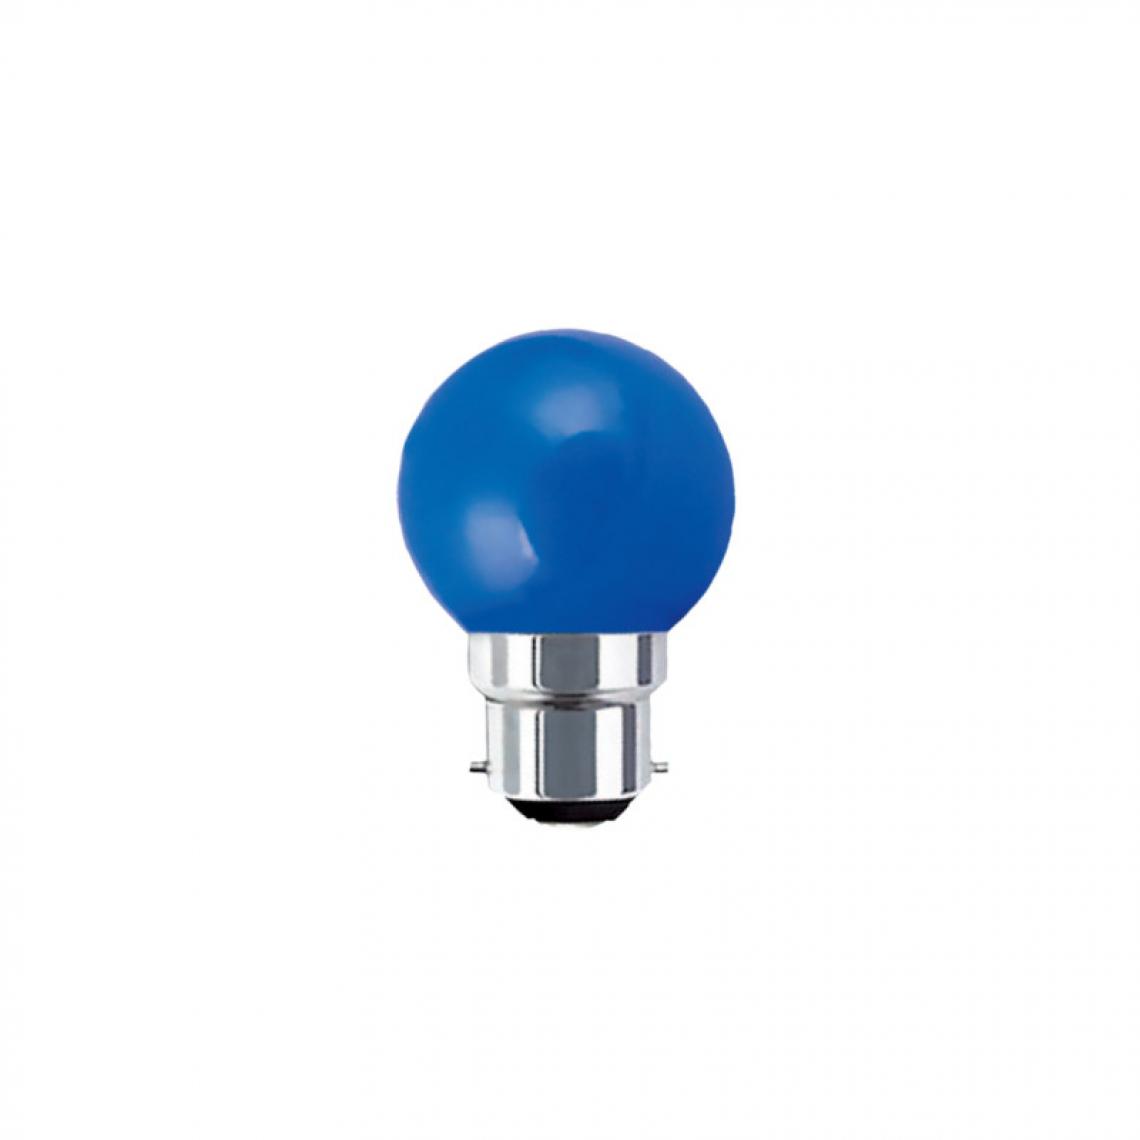 Xxcell - Ampoule LED guinguette bleue XXCELL - 1 W - B22 - Ampoules LED